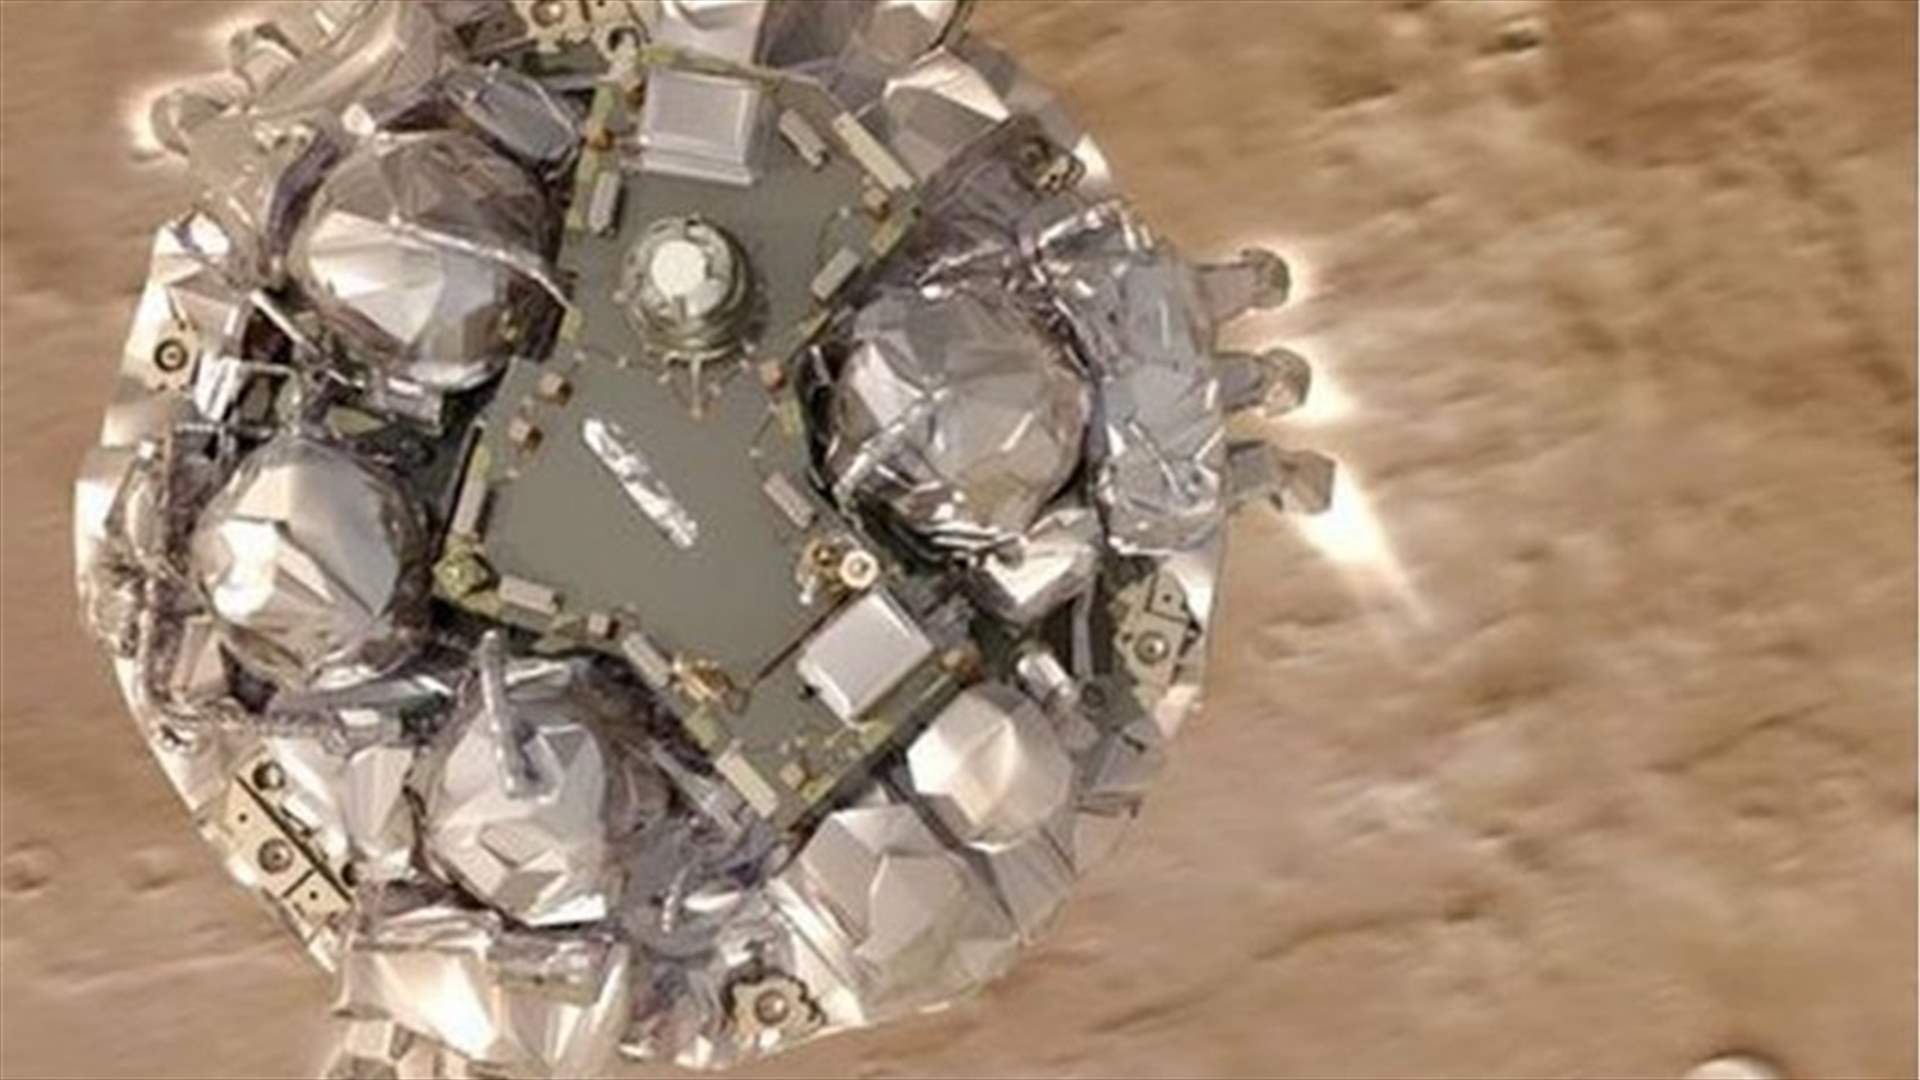  وصول مركبة فضاء أوروبية إلى المريخ